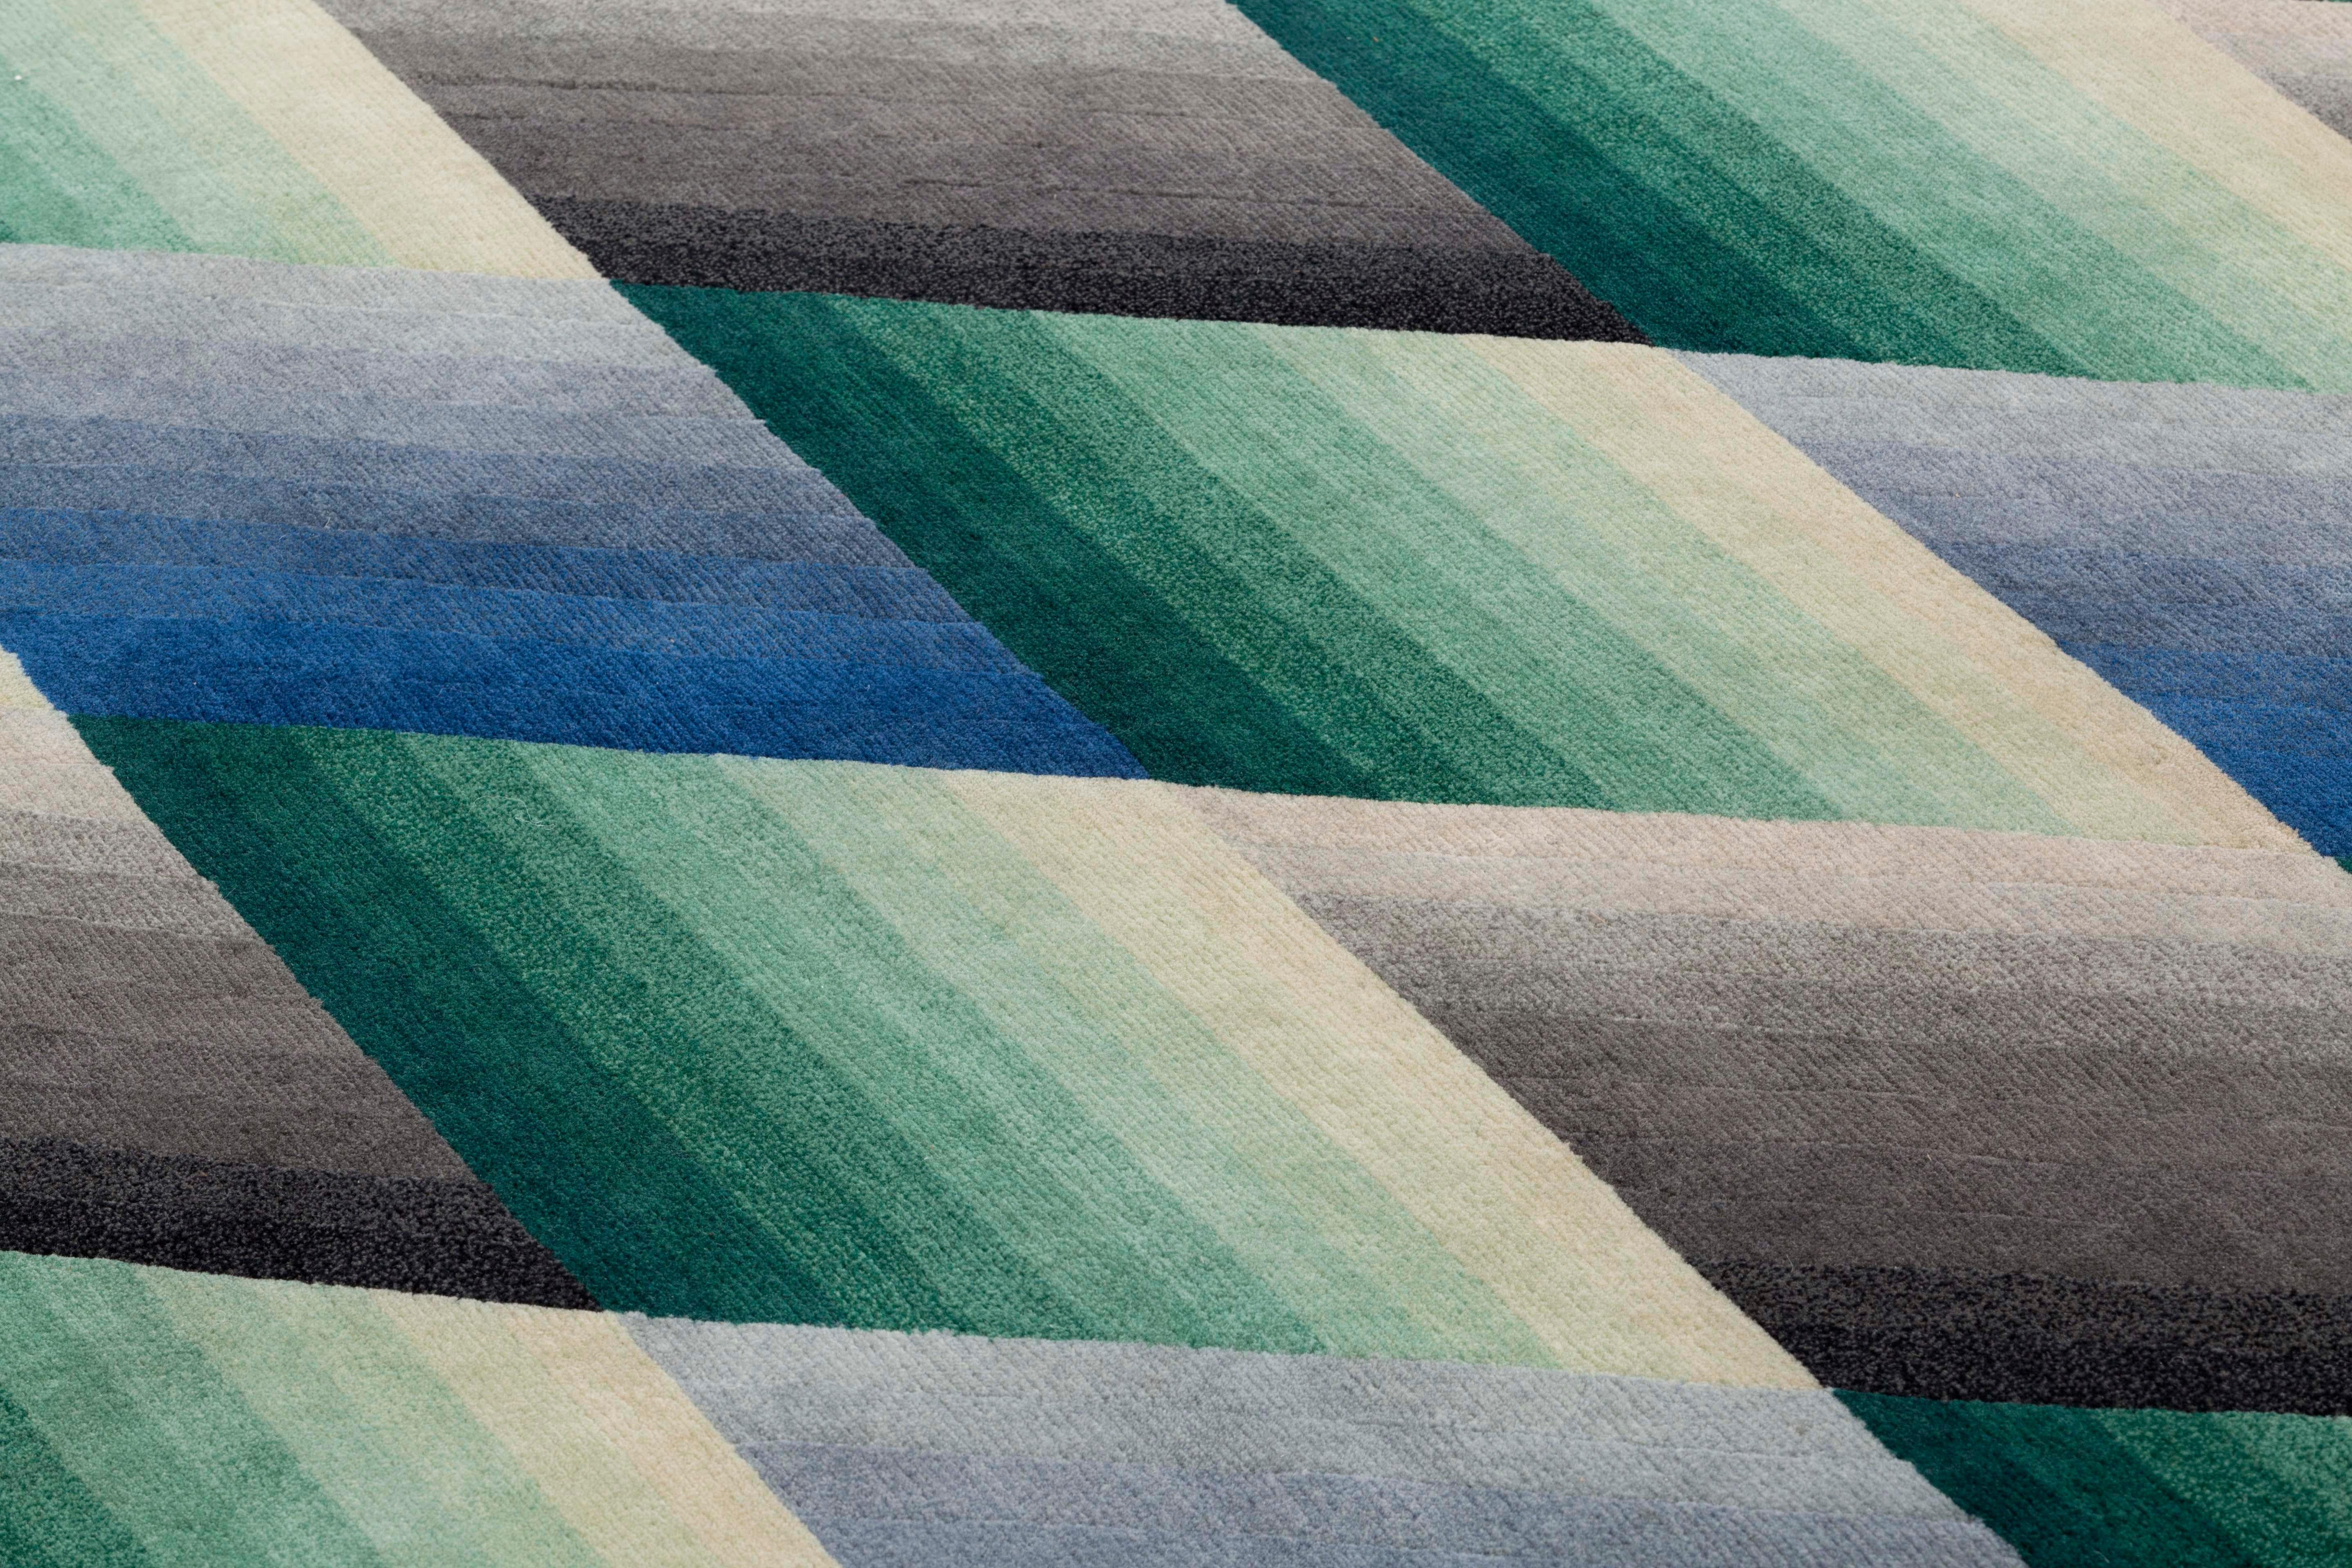 Patricia Urquiola kreiert einen weiteren modernen Accessoire-Klassiker. Mirage, die neue, für GAN entworfene Teppichkollektion, ist dazu bestimmt, eine geschätzte Ikone zu werden. Farbe, Geometrie und Überlagerung verbinden sich in diesem Teppich